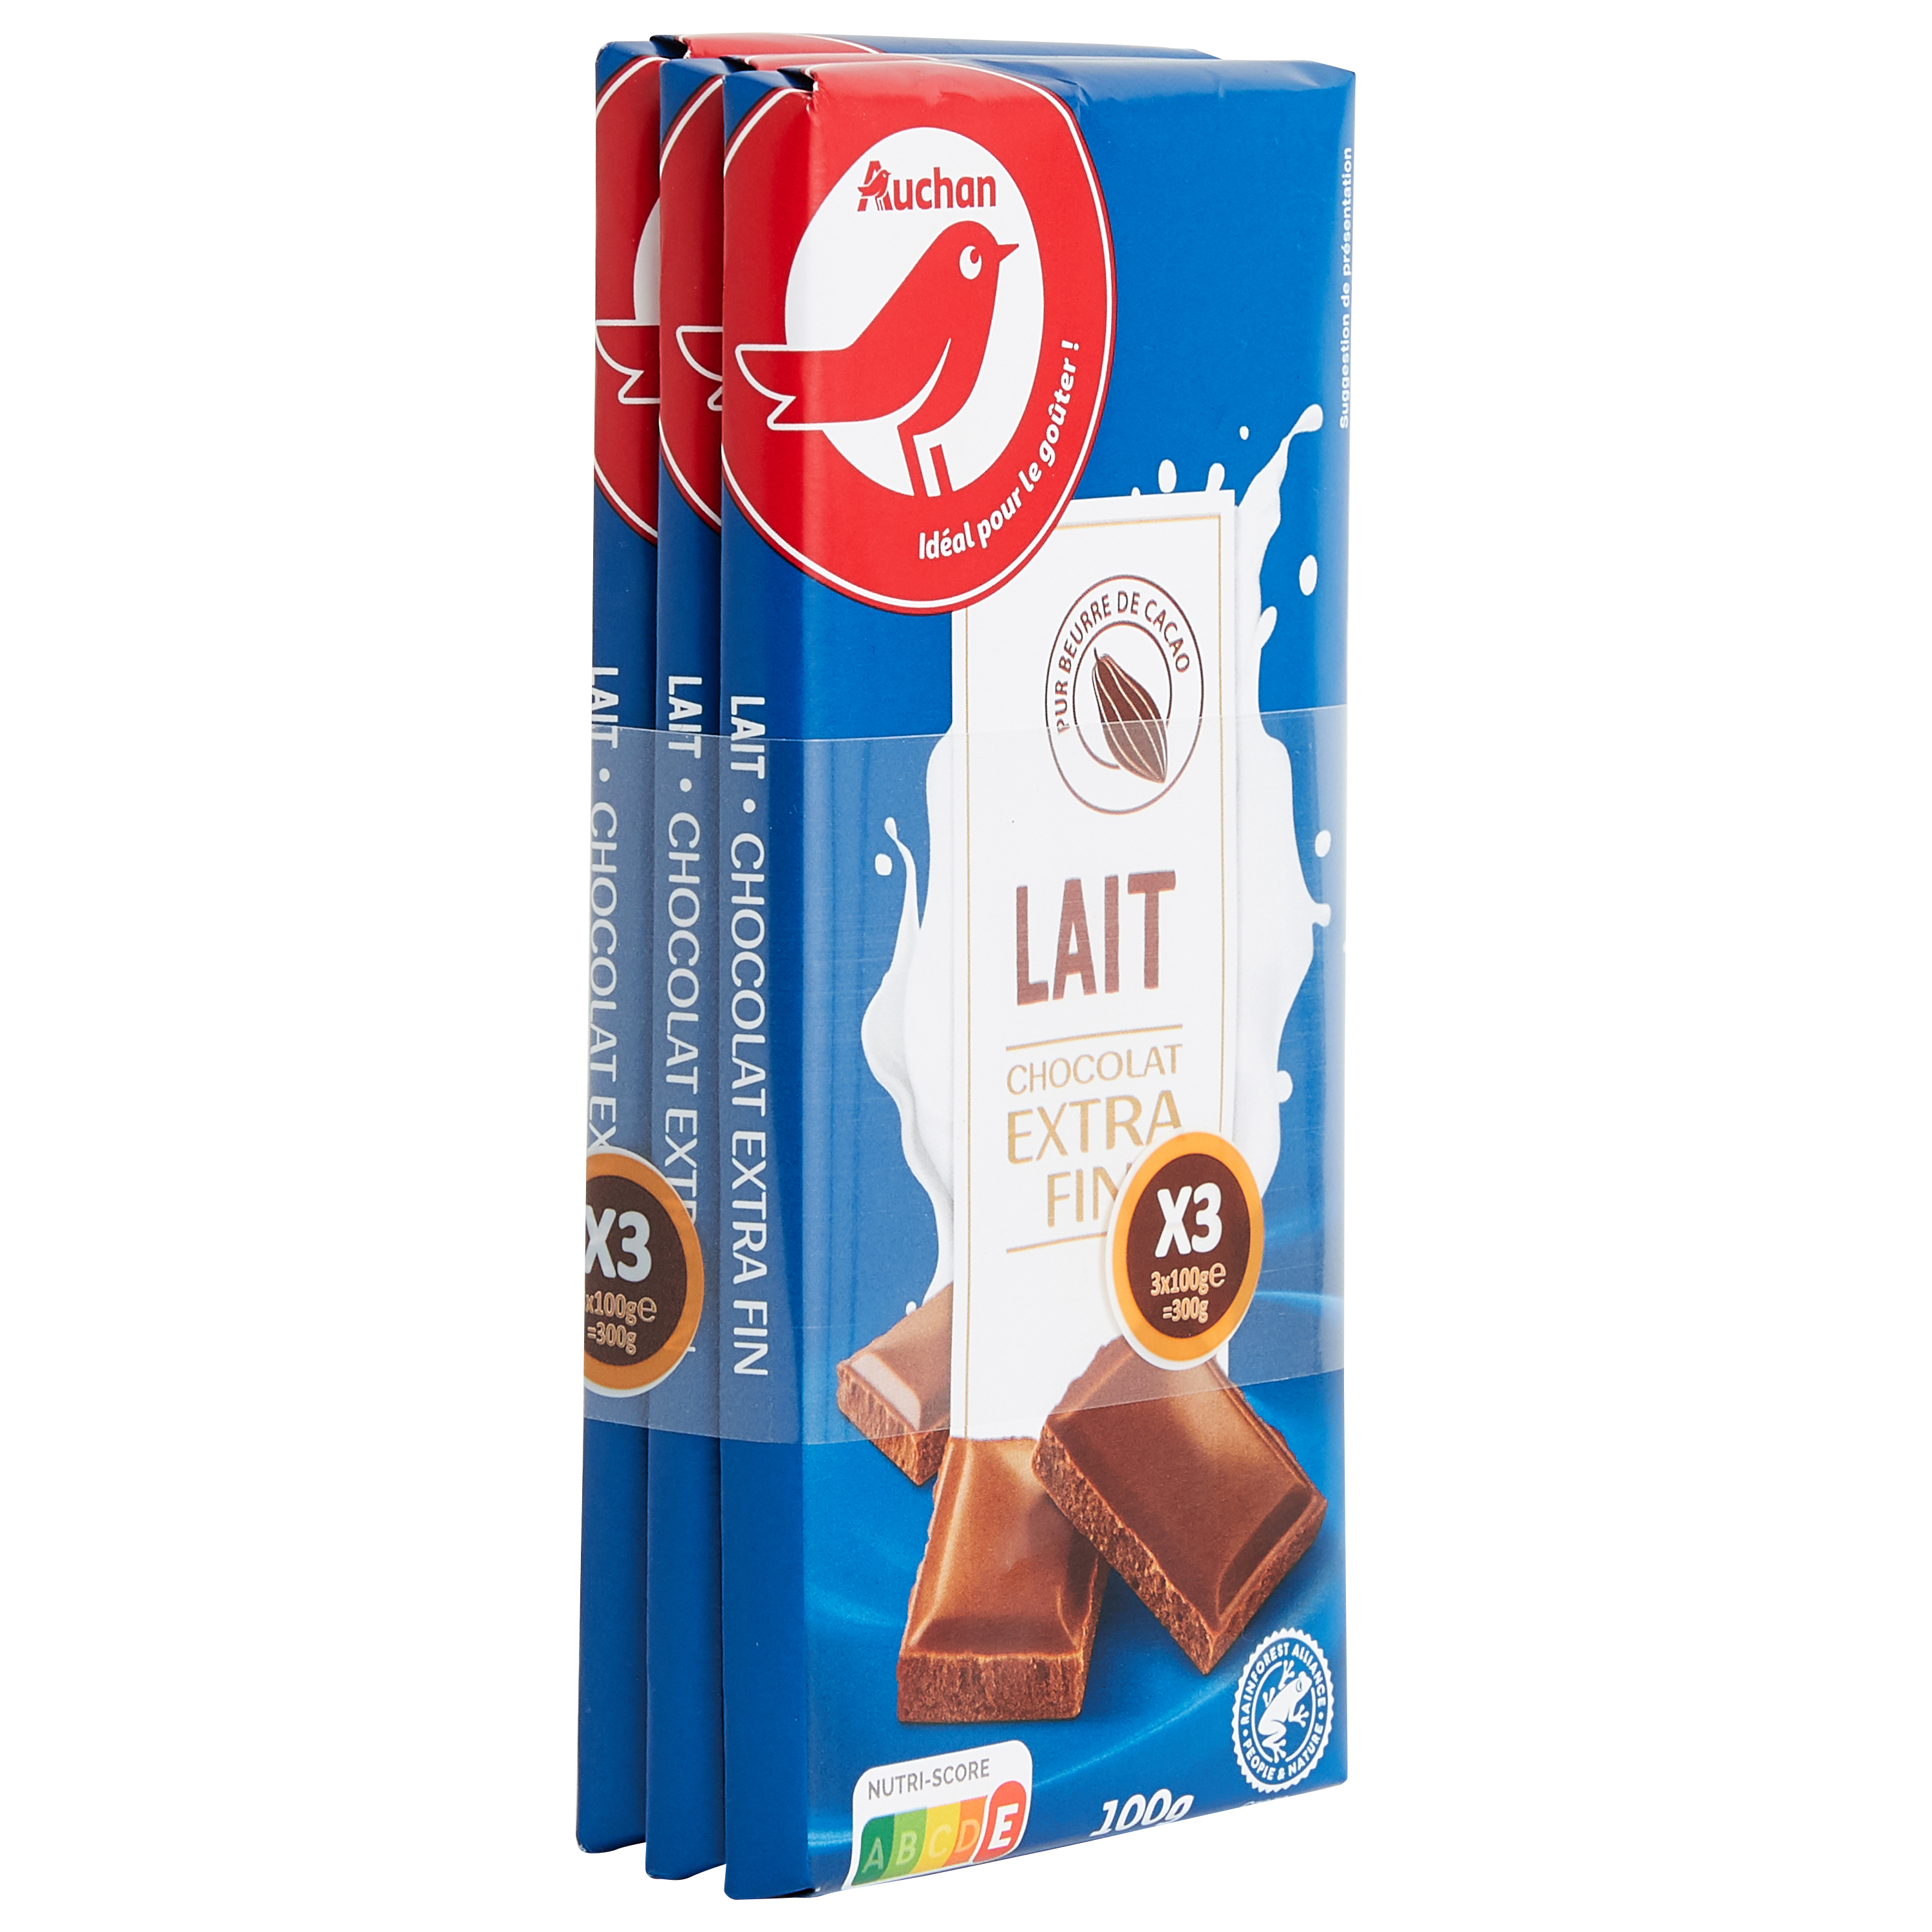 Promo TABLETTES DE CHOCOLAT LAIT DAIM MARABOU 250 g chez Auchan